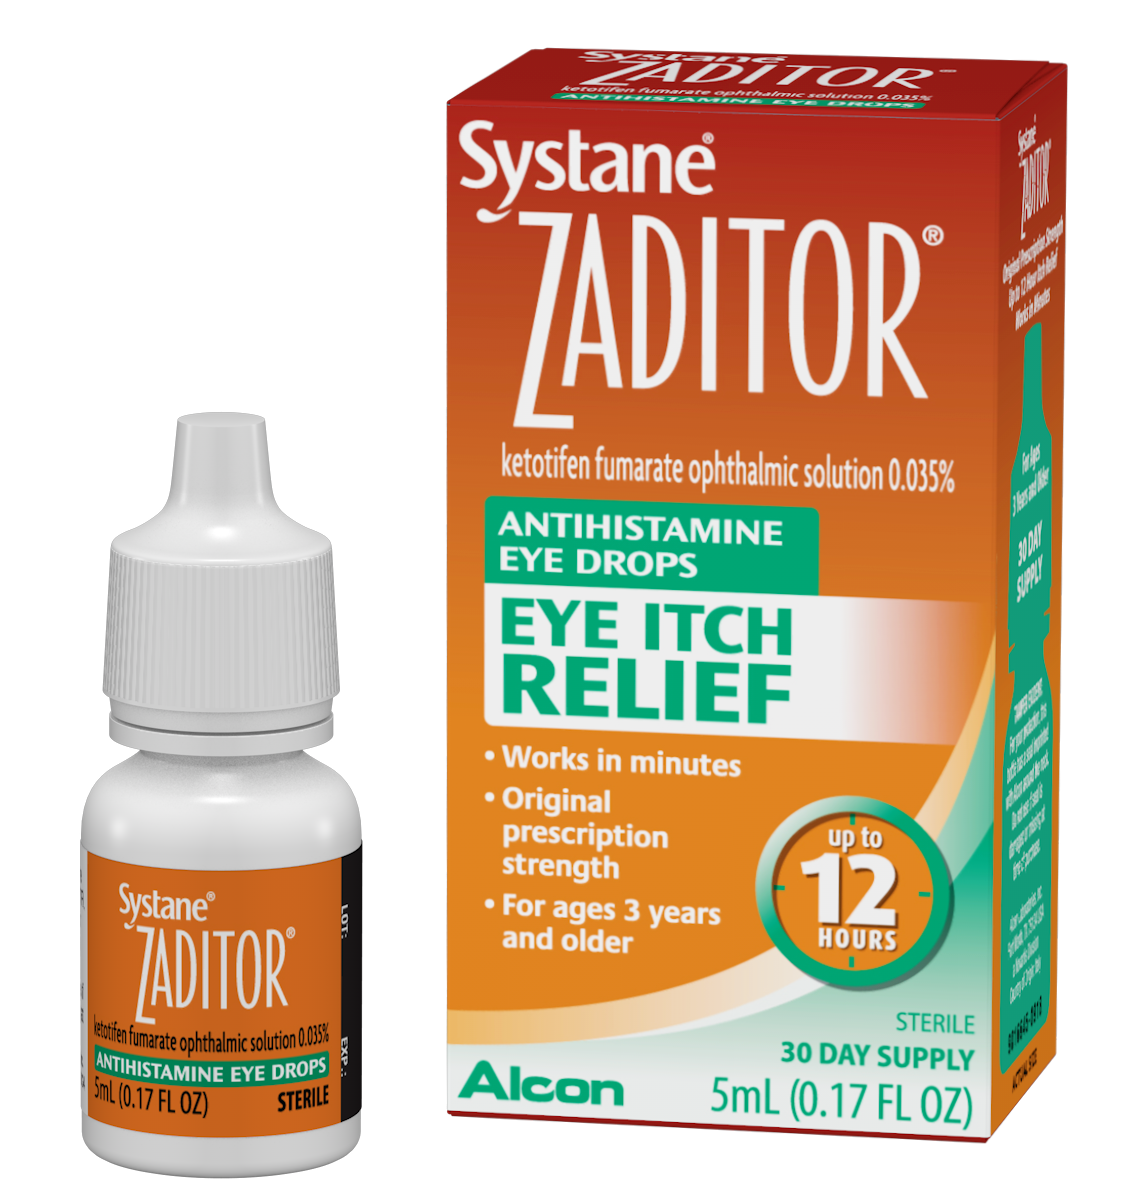 SYSTANE® ZADITOR® Antihistamine Eye Drops